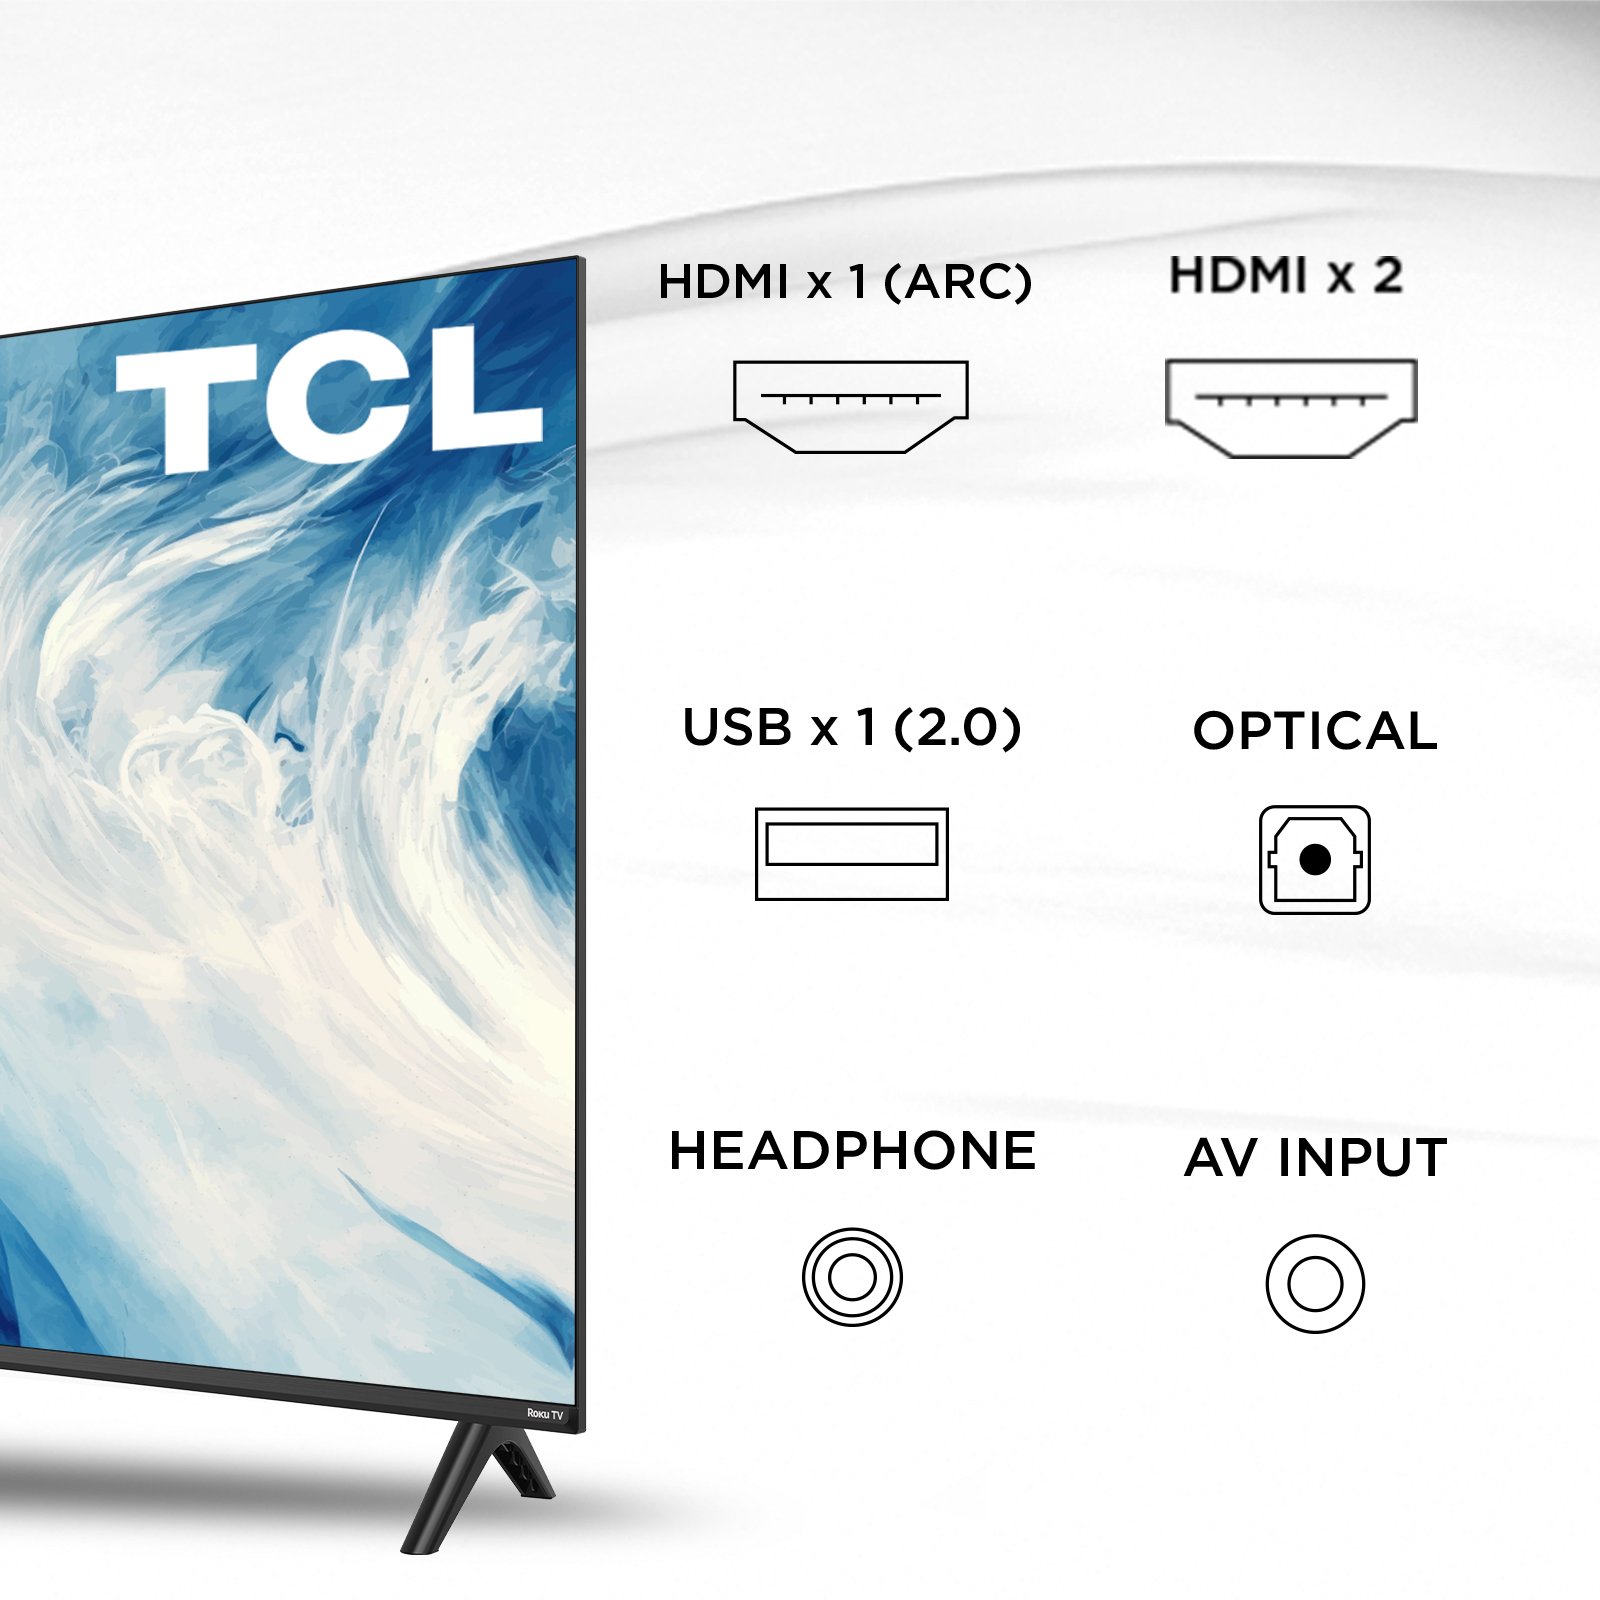 Pantalla TCL 40" FHD 2K Roku TV 40S310R Smart TV